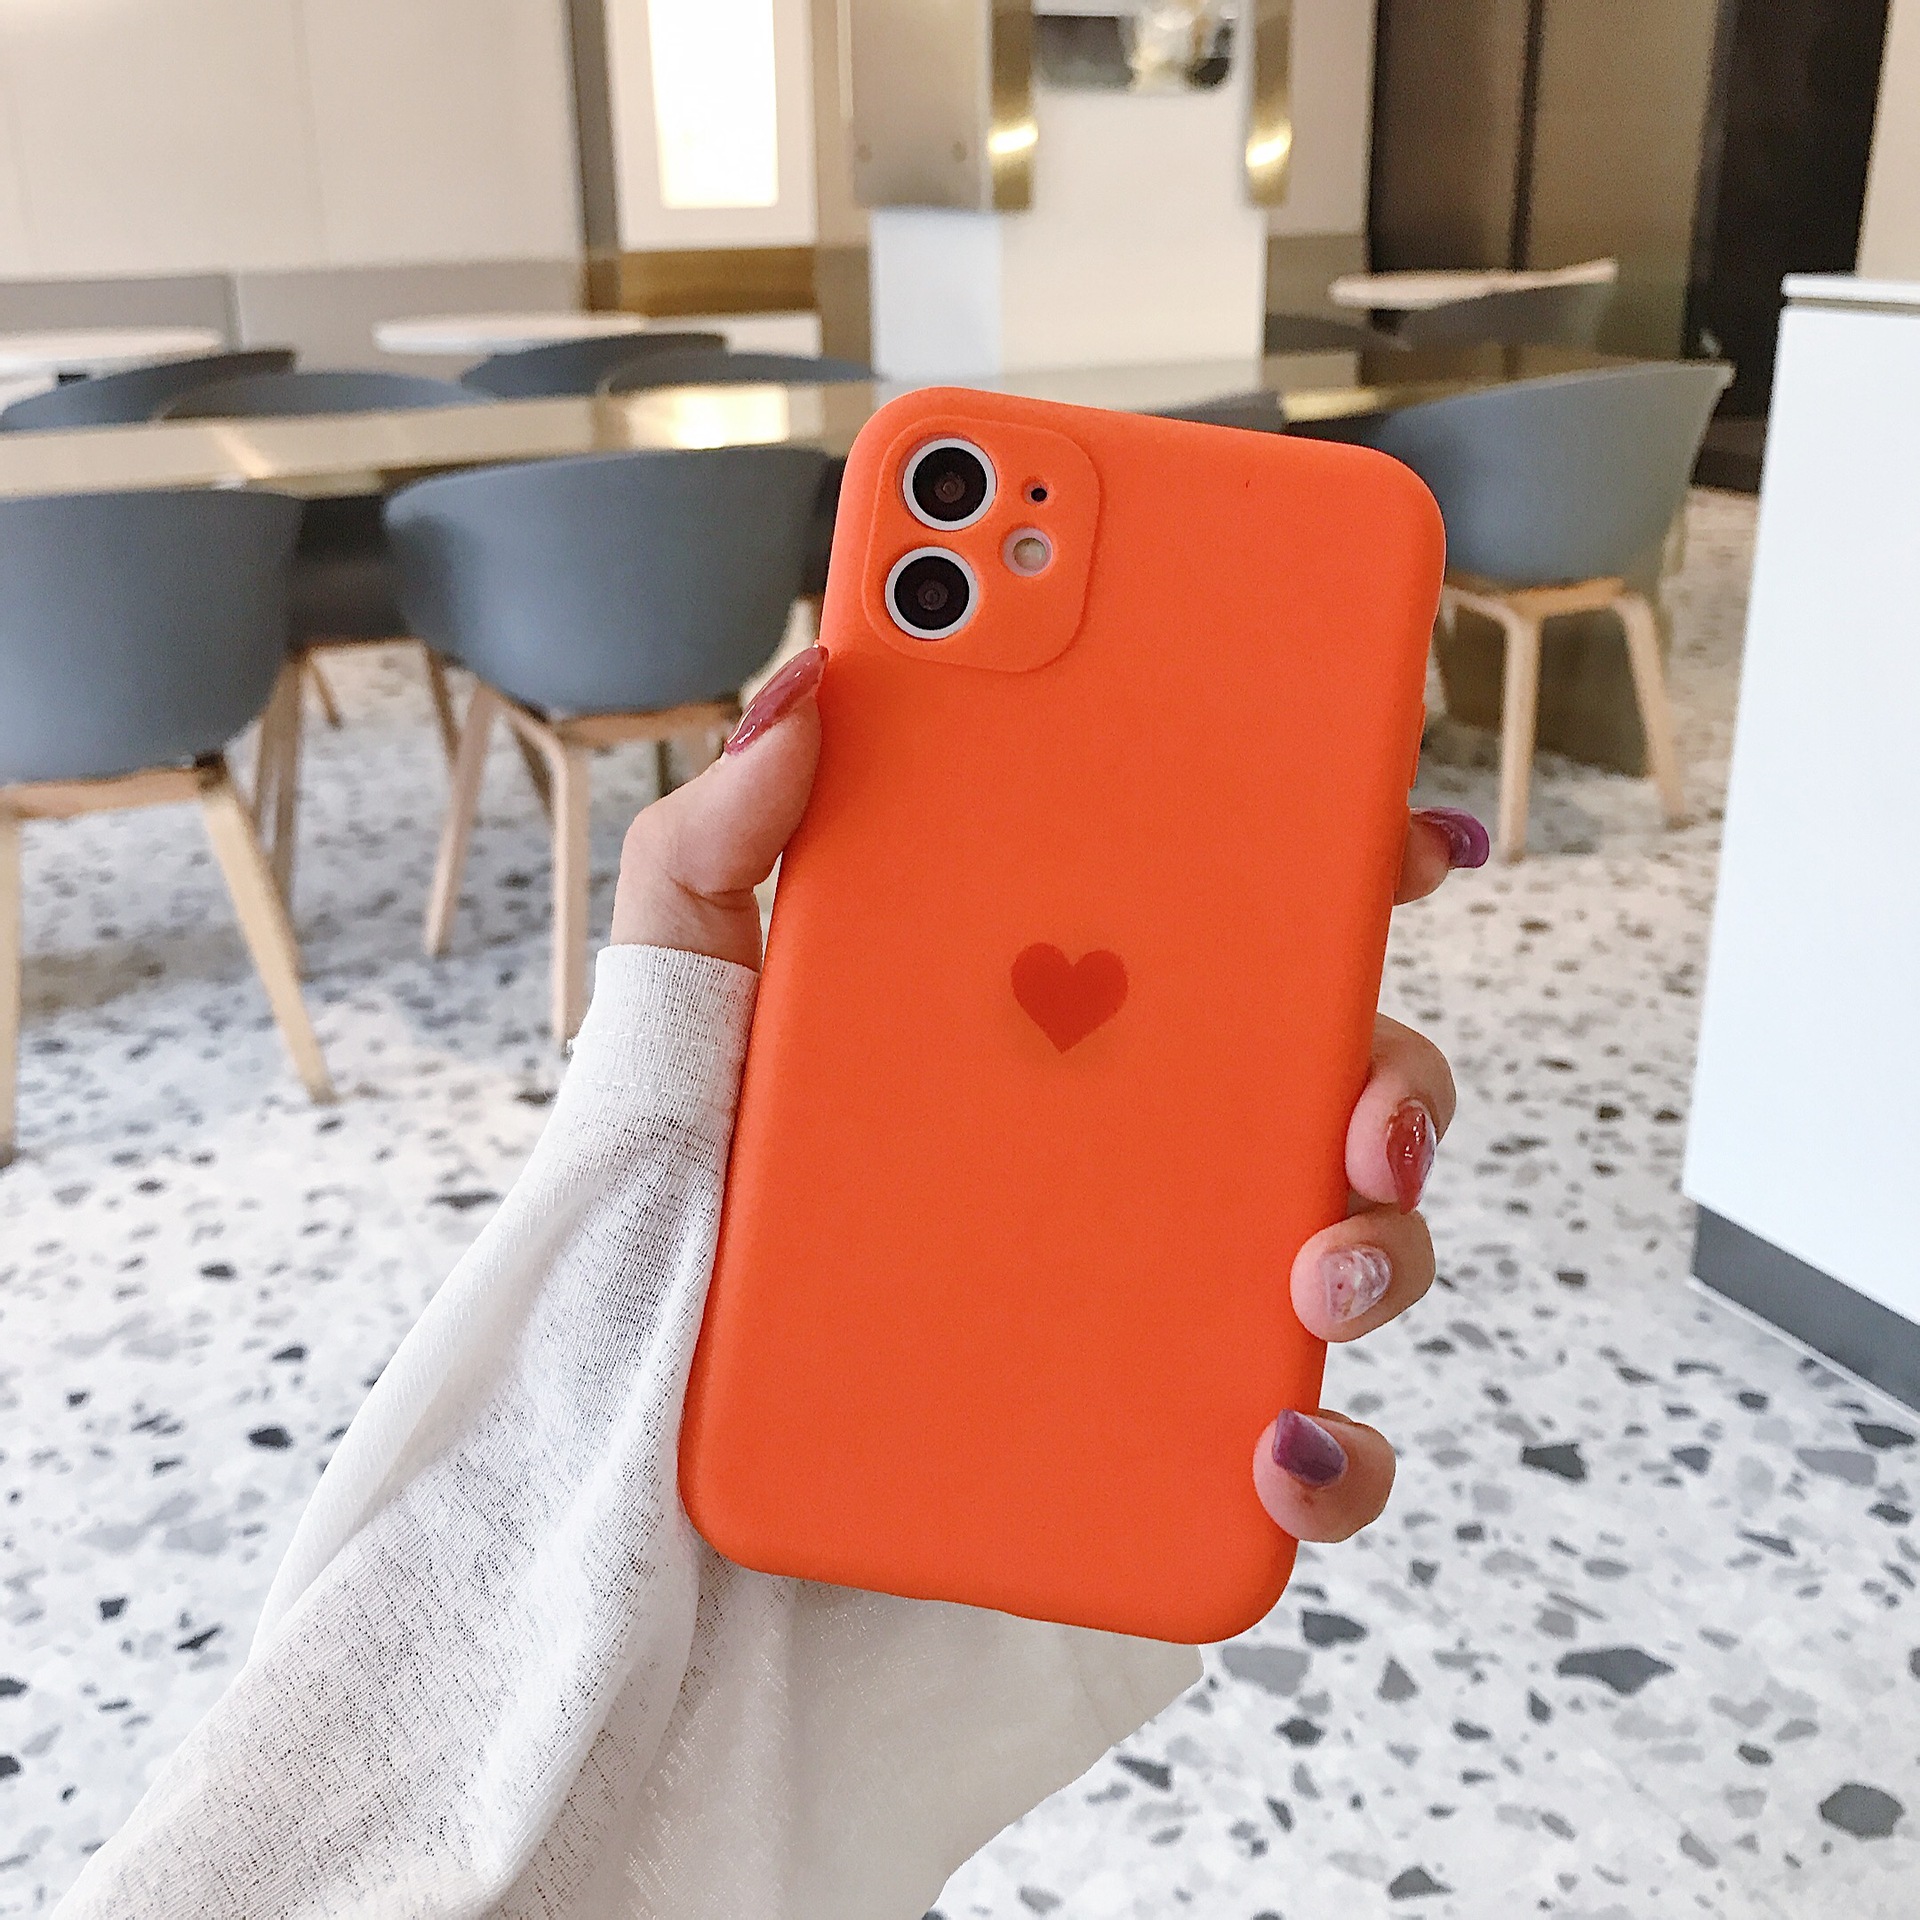 [hao fashion] เคสโทรศัพท์มือถือ เคสไอโฟน เคสมือถือ เคสราคาถูก เคสซิลิโคนนิ่ม คลุมขอบกล้องหลัง สำหรับไอโฟน12 12 Pro Max 12 11 / X / XR / max HF0174 ตระกูลสี orange love heart รูปแบบรุ่นที่ีรองรับ iPhone11 Pro max